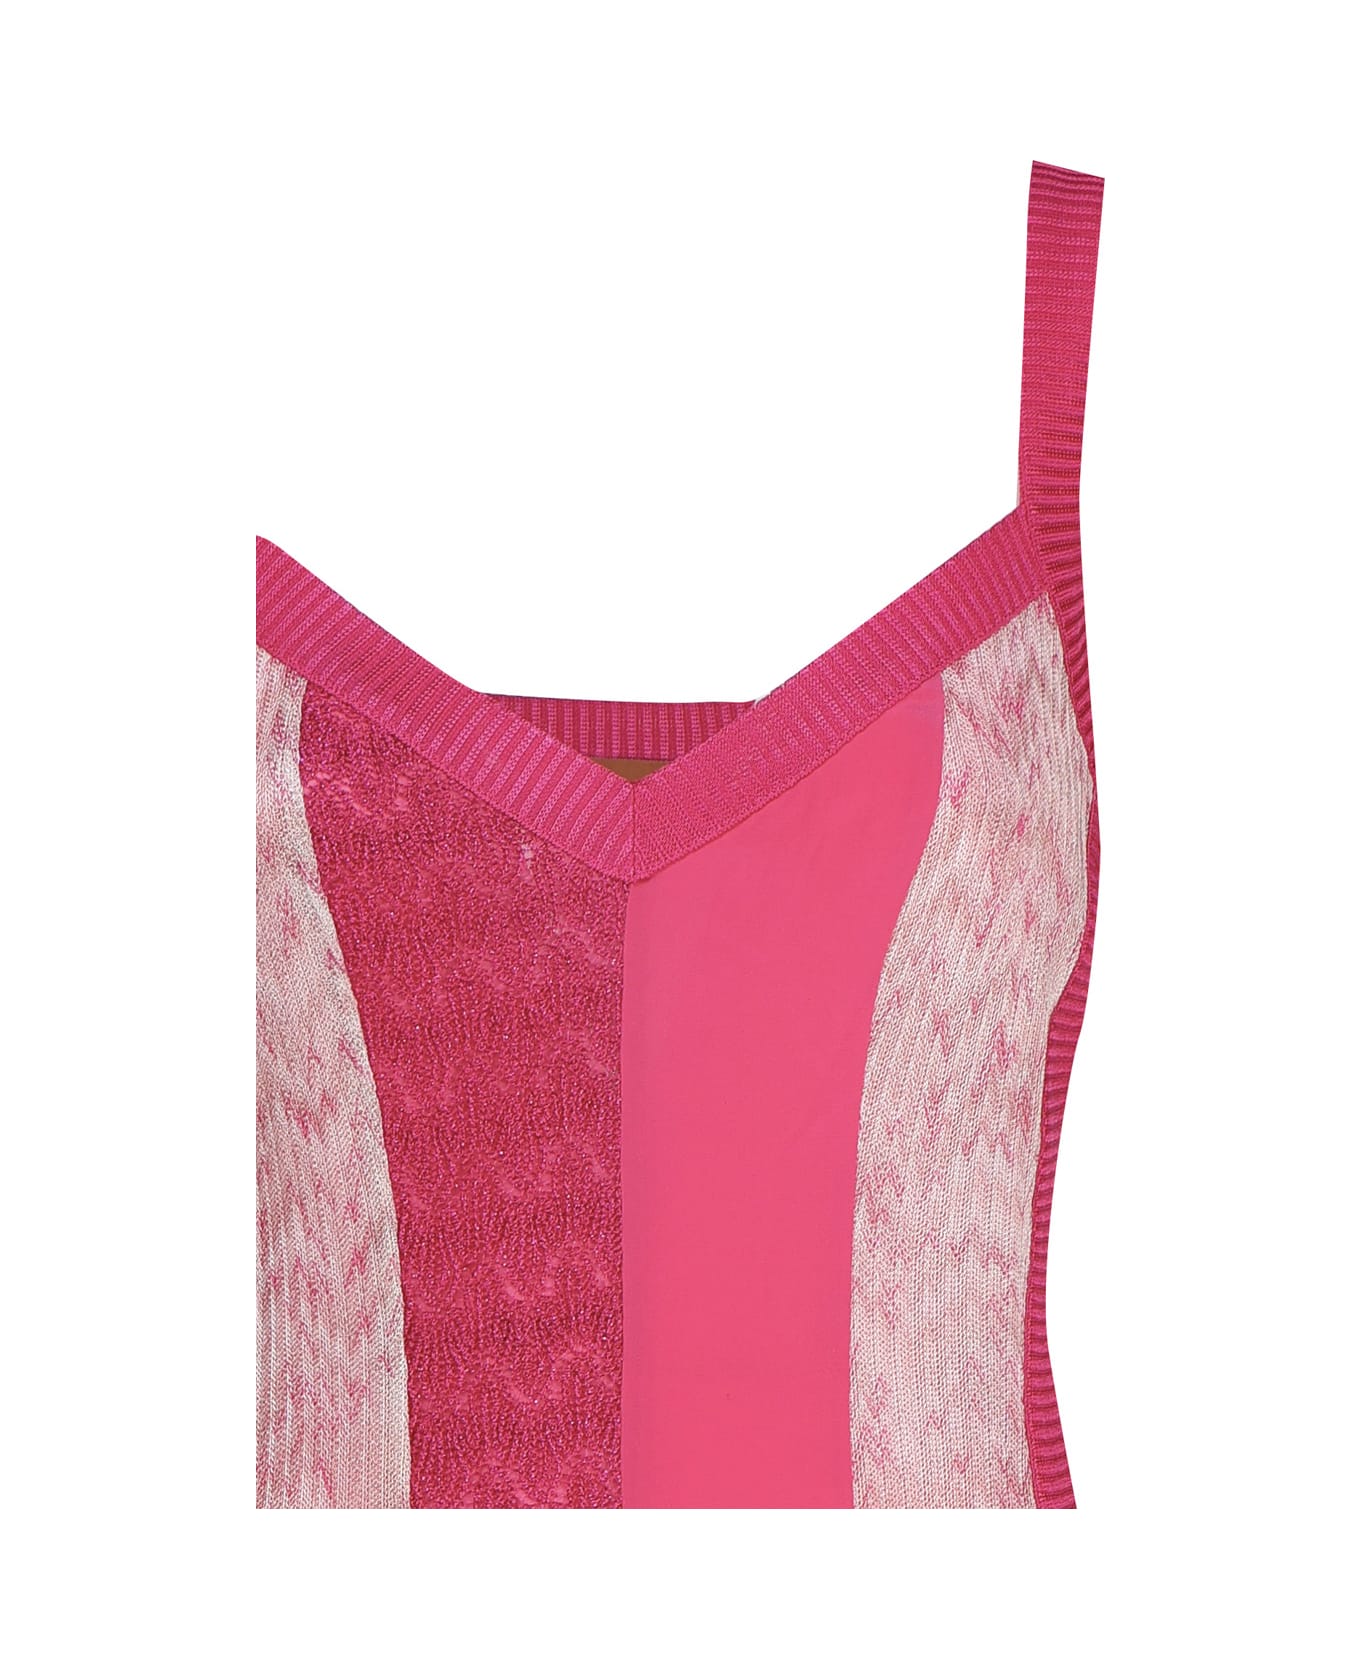 Missoni Lightweight Knit Dress - Pink